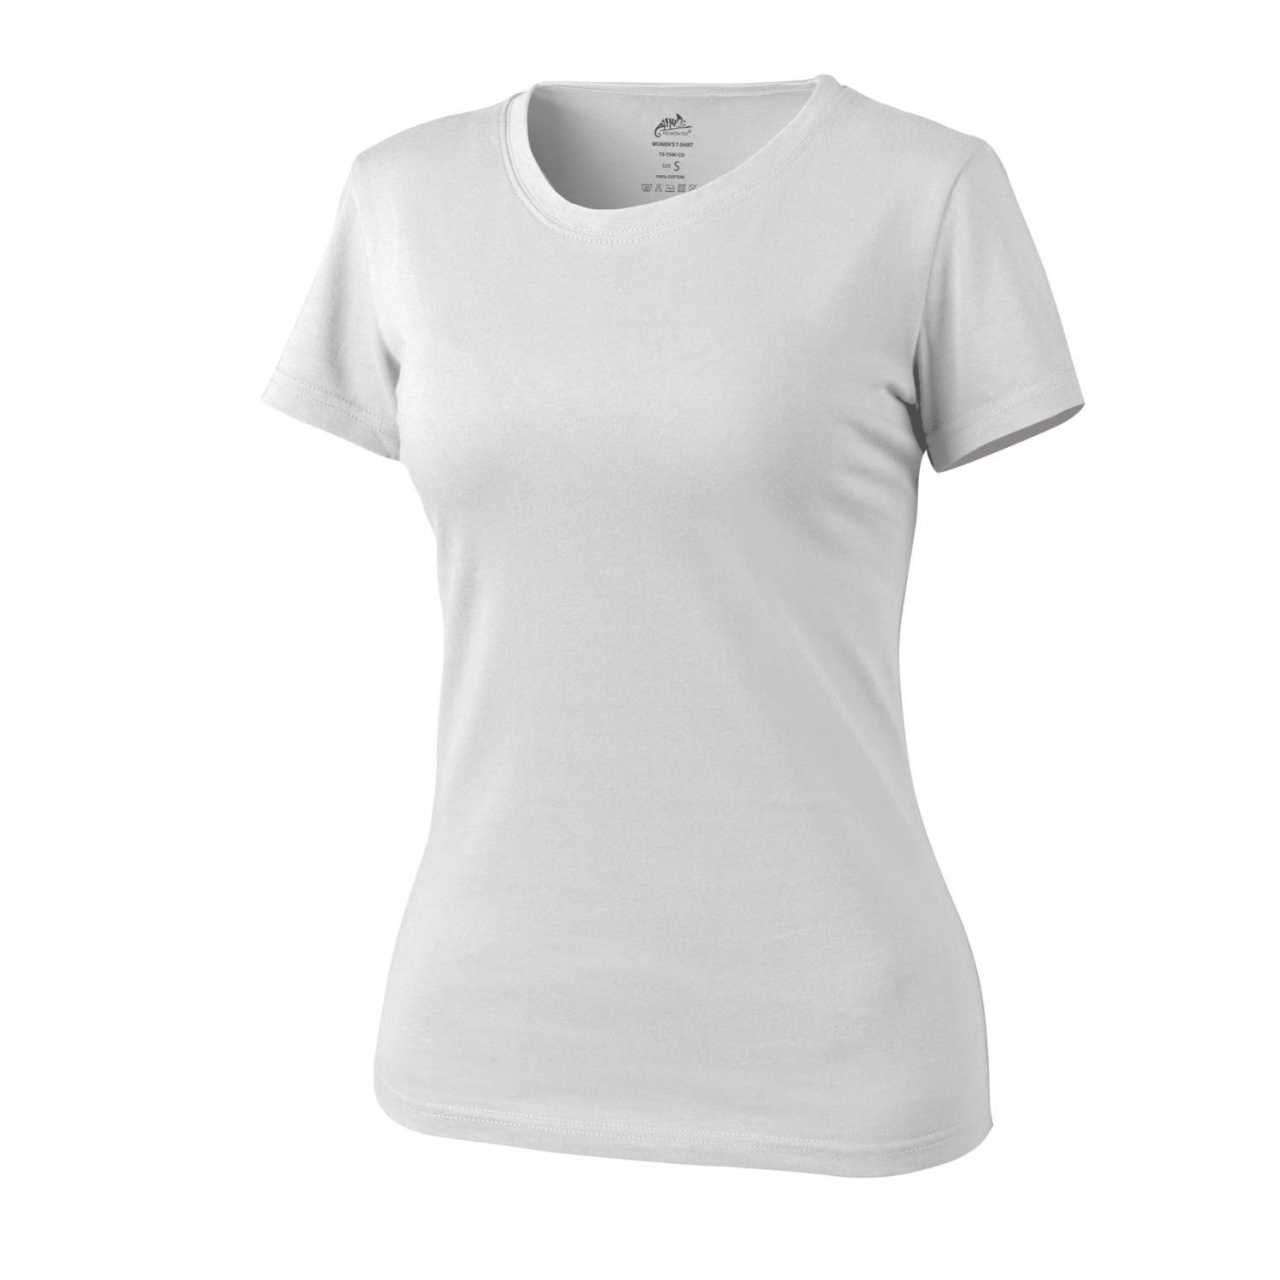 Tričko dámské Helikon Womens Shirt - bílé, XS